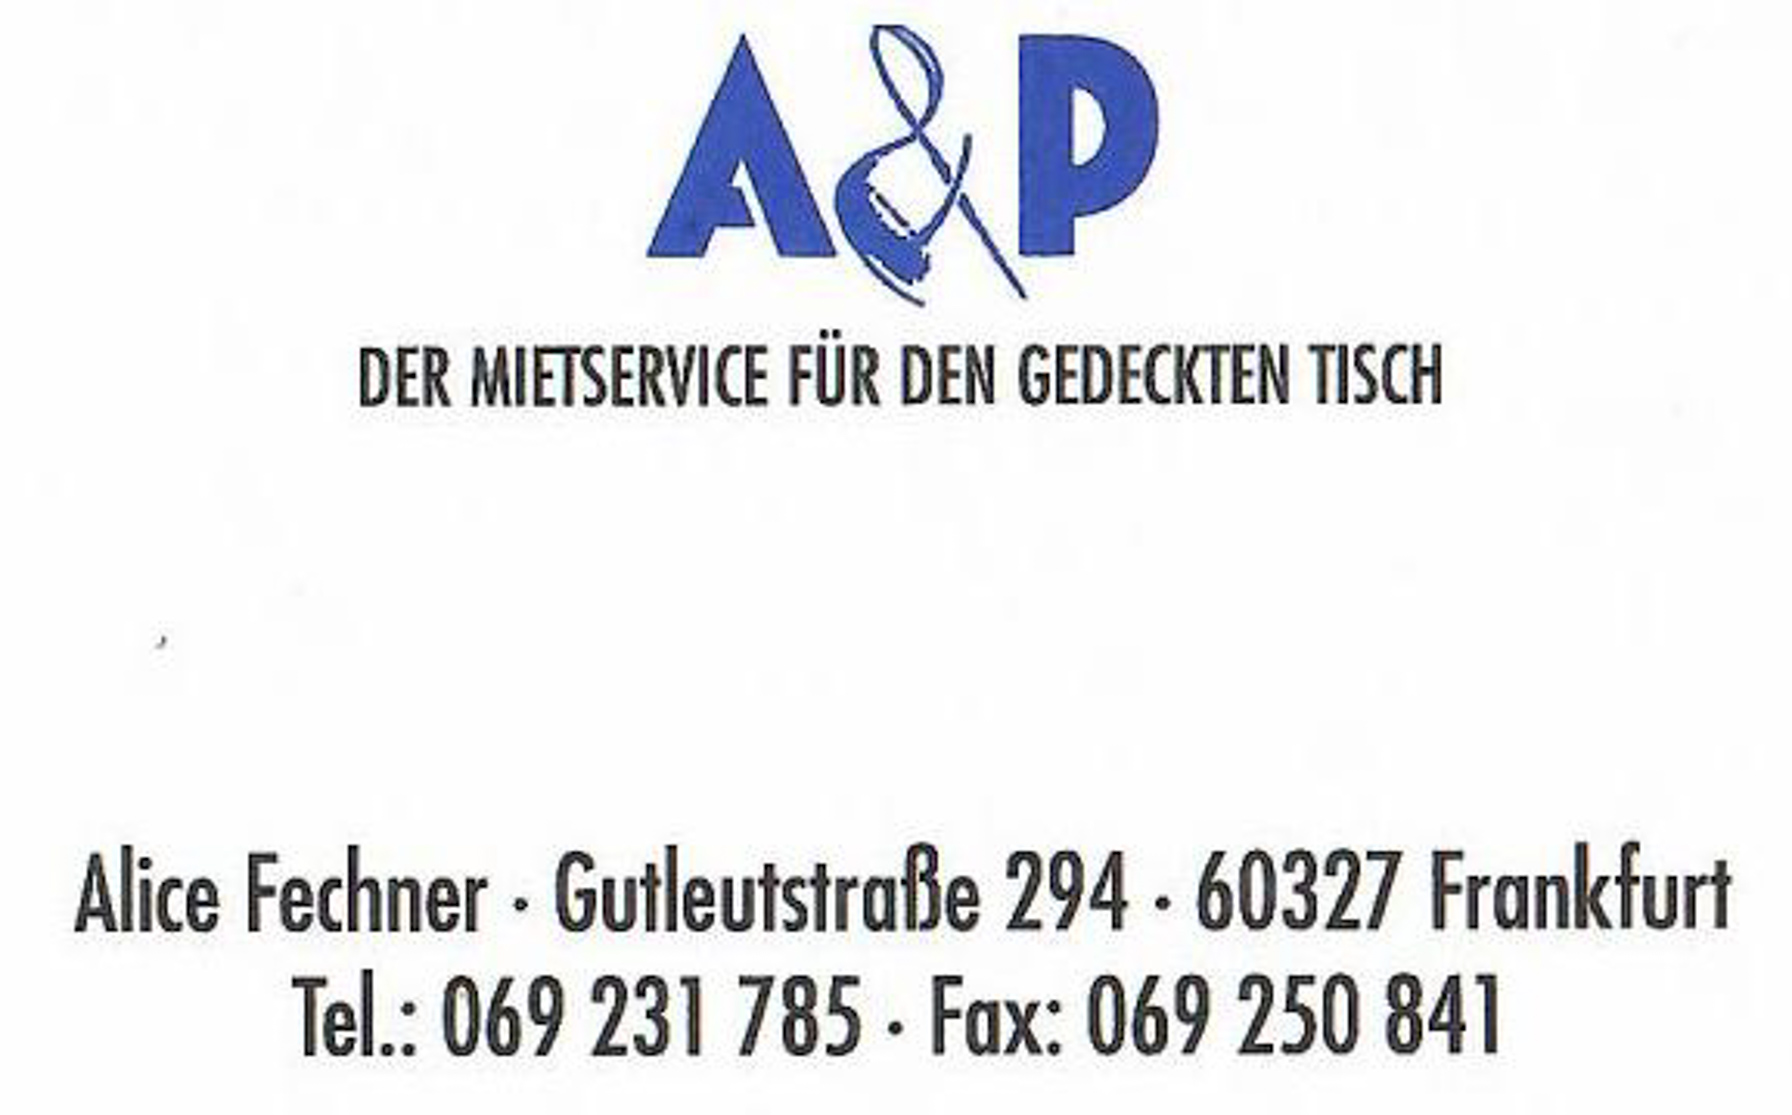 Alice-Fechner-Logo.jpg